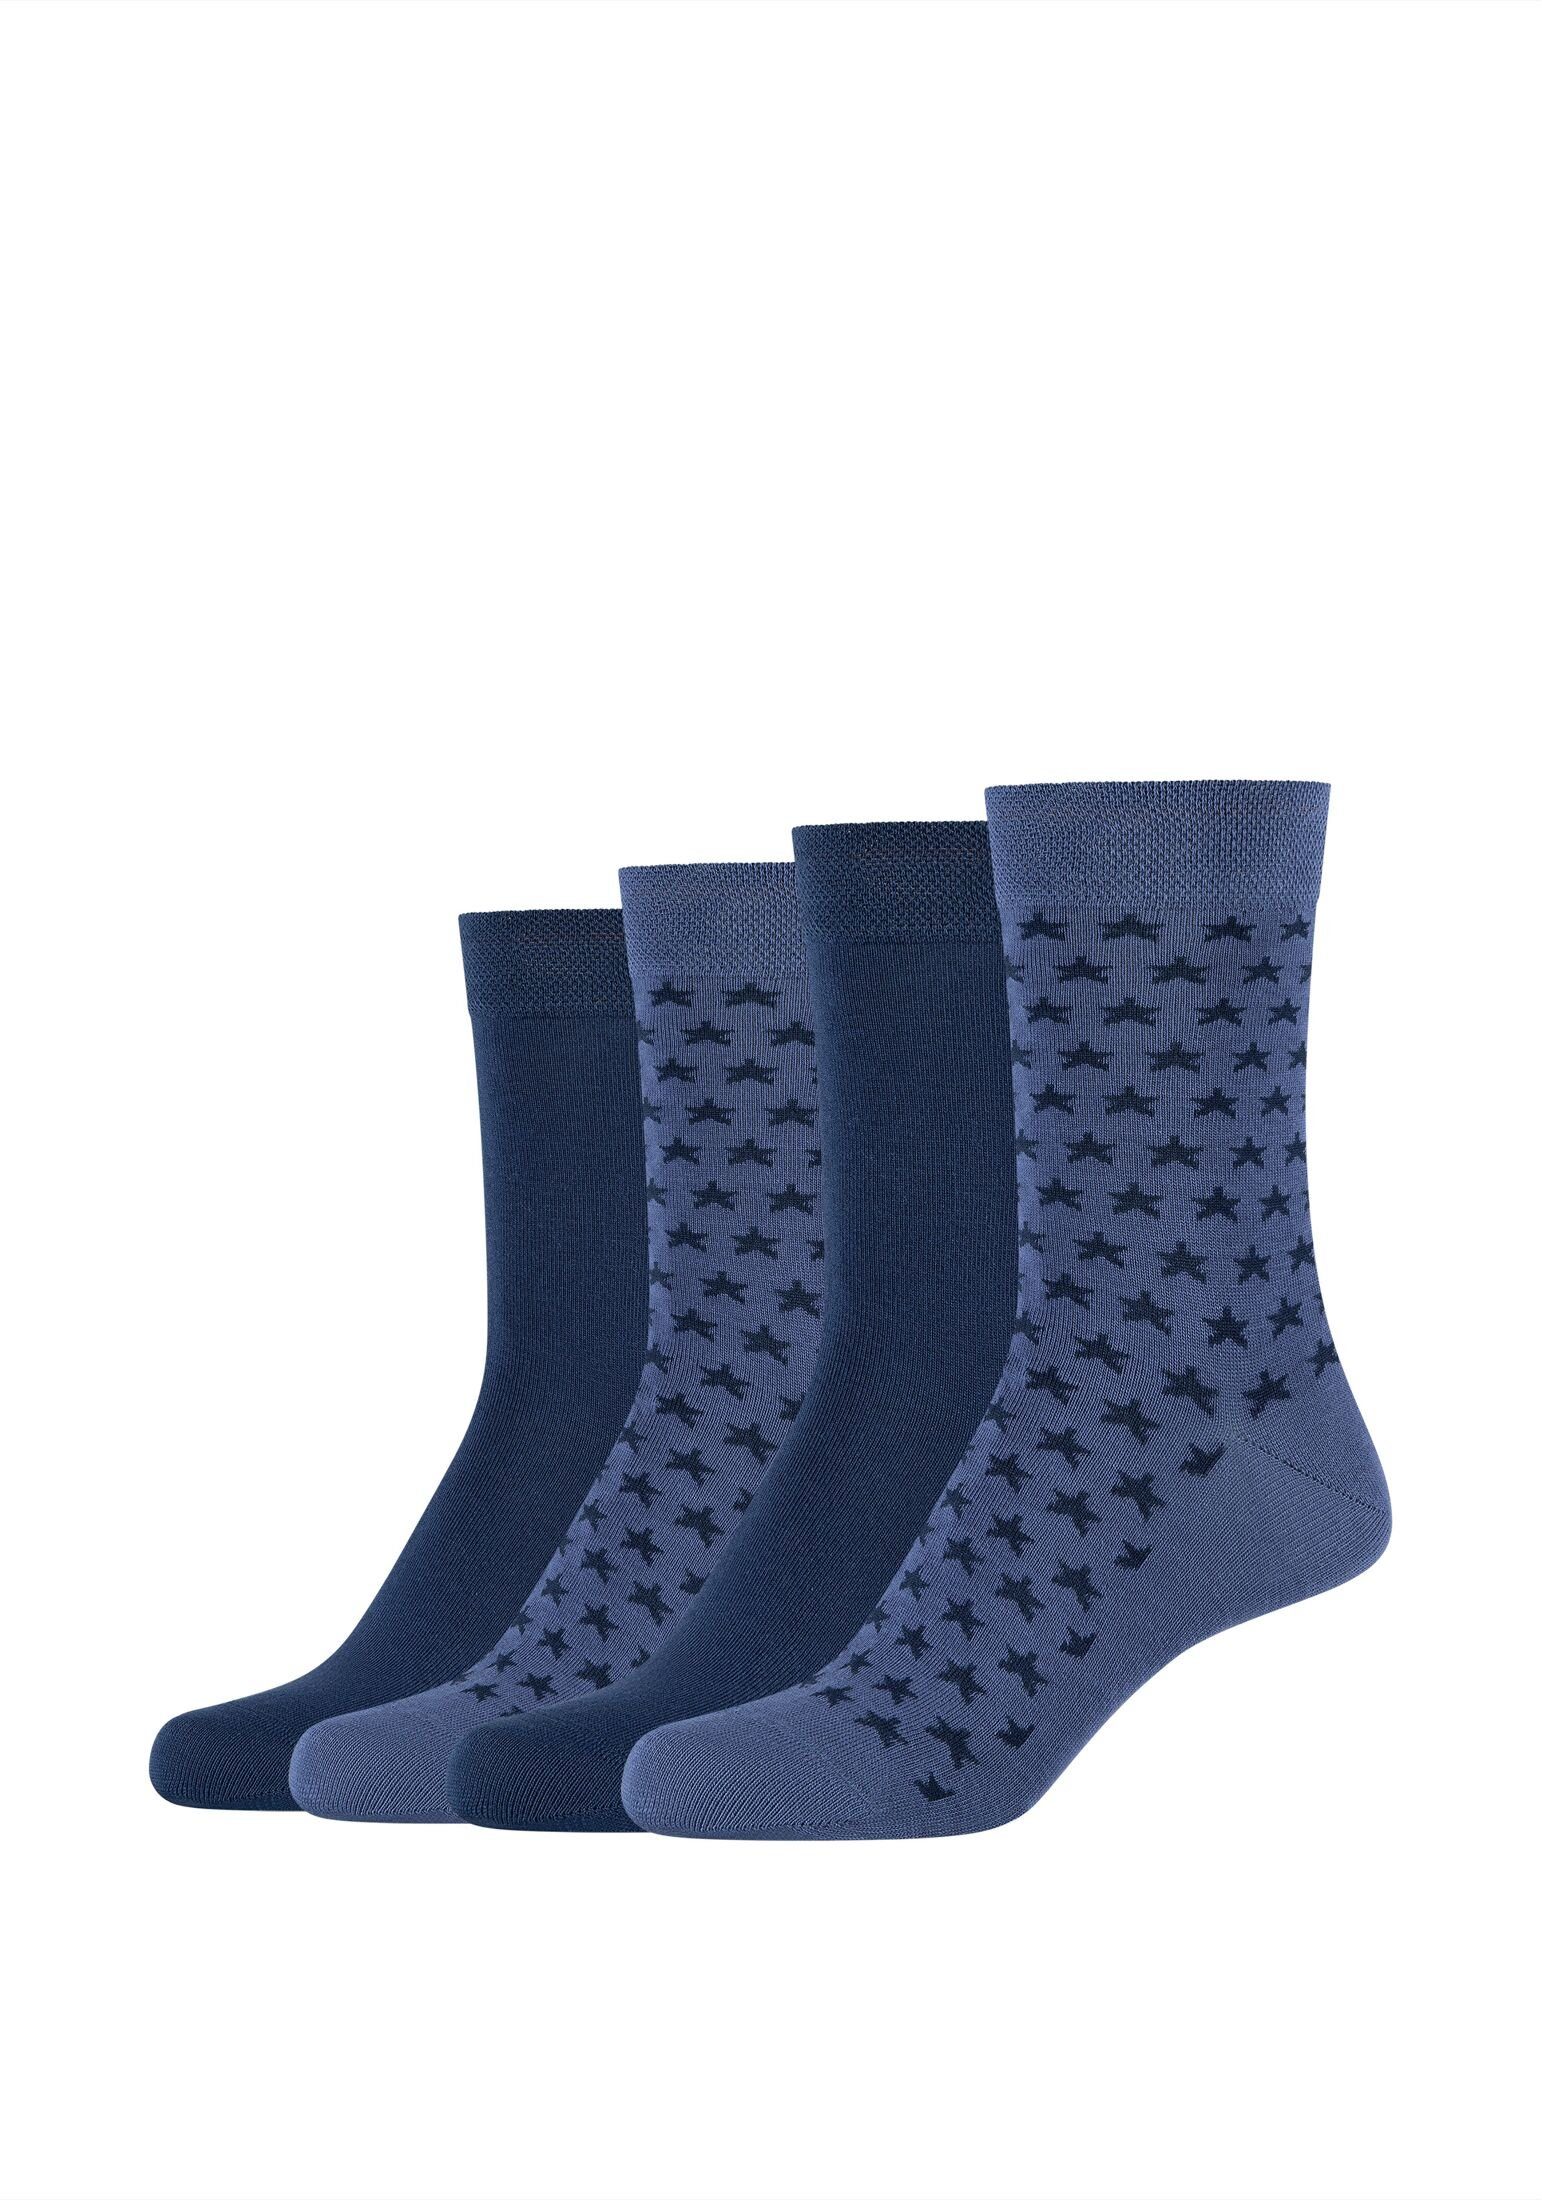 Camano Socken Socken 4er Pack, Keine Druckstellen dank softer,  handgekettelter Zehennähte